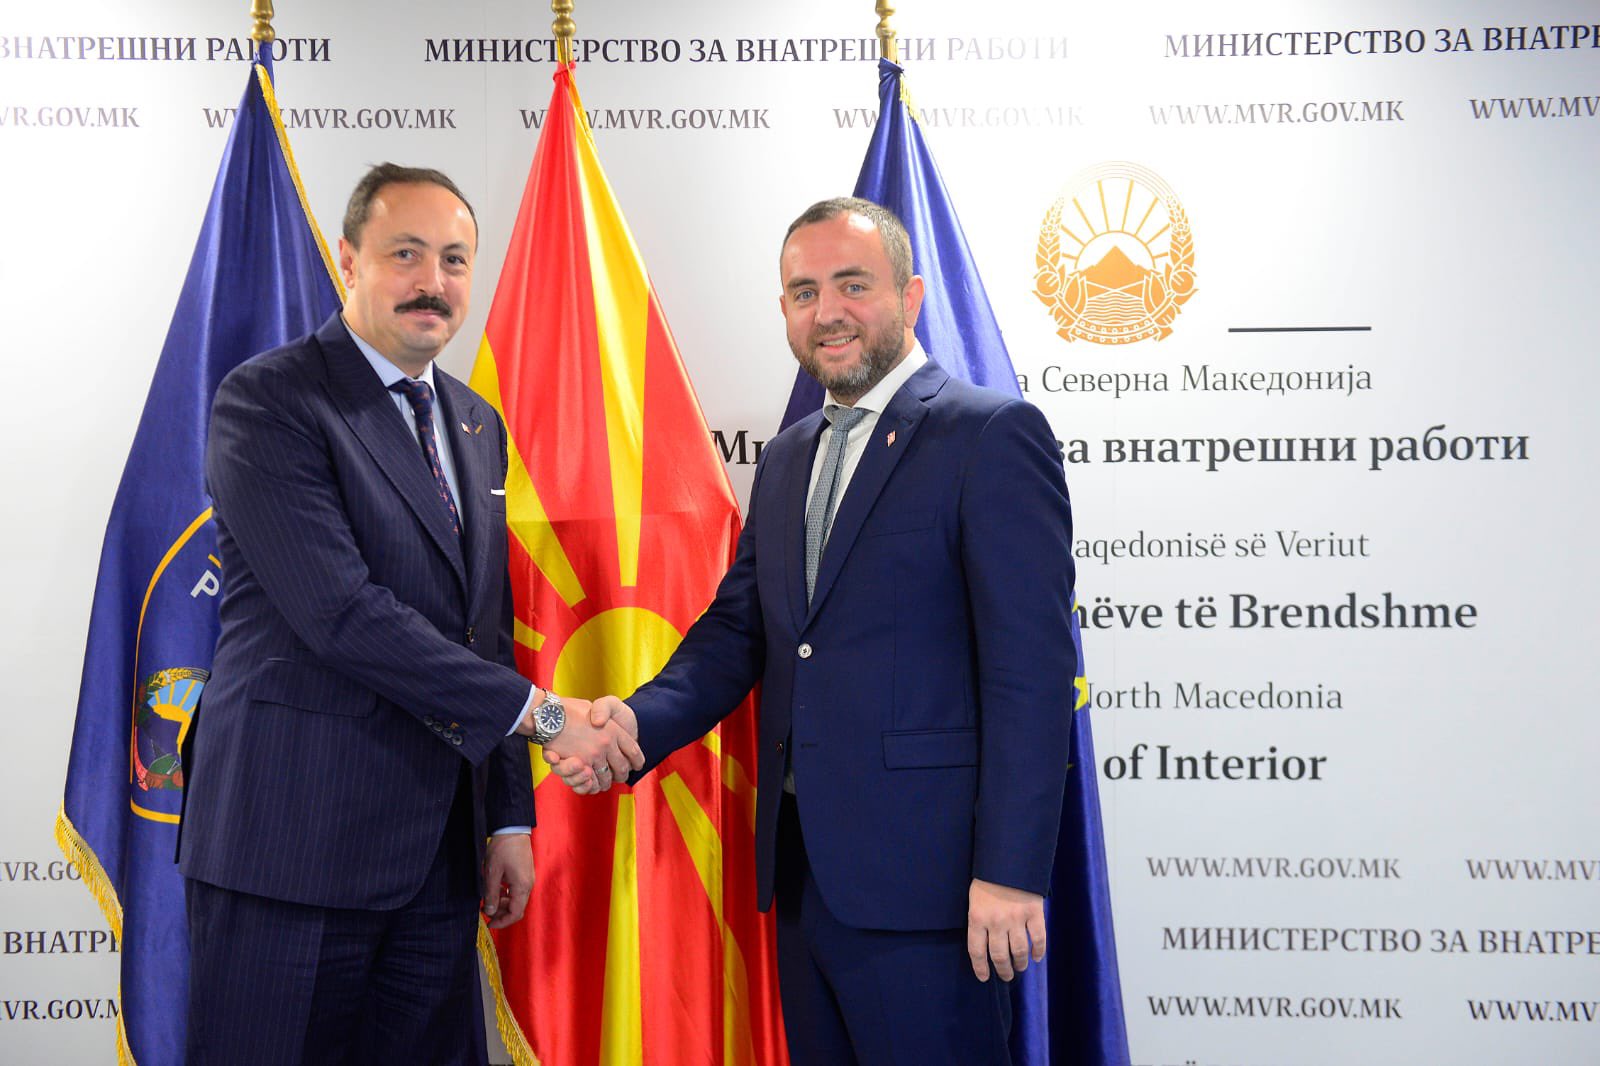 Büyükelçi Ulusoy, İçişleri Bakanı Pançe Toşkovski ile görüştü